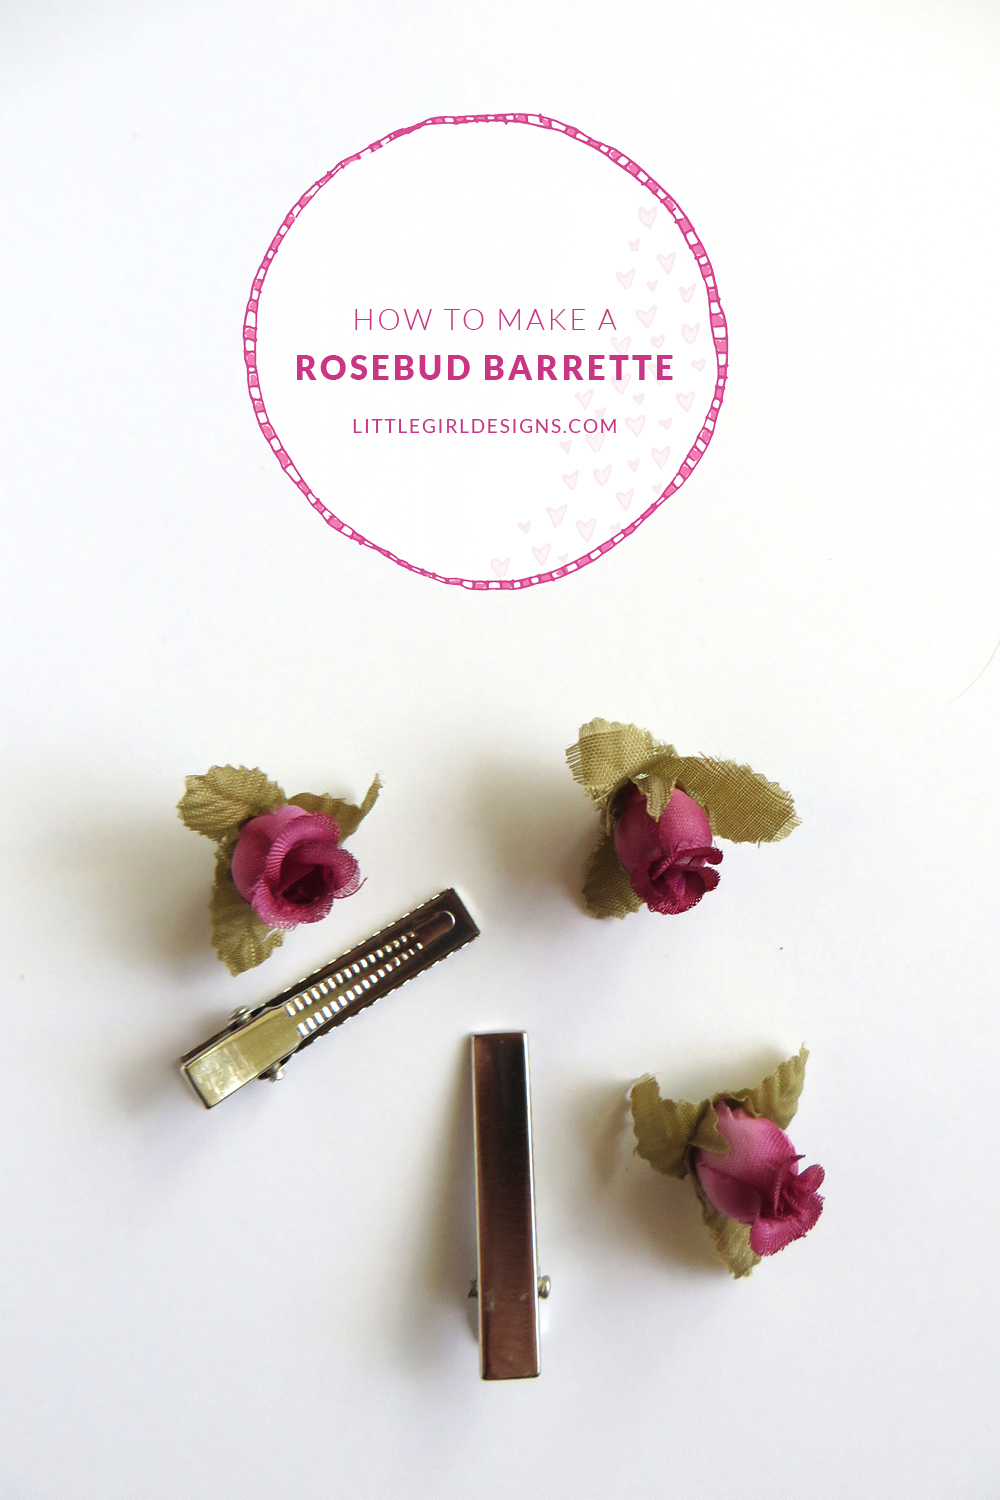 How to Make a Rosebud Barrette